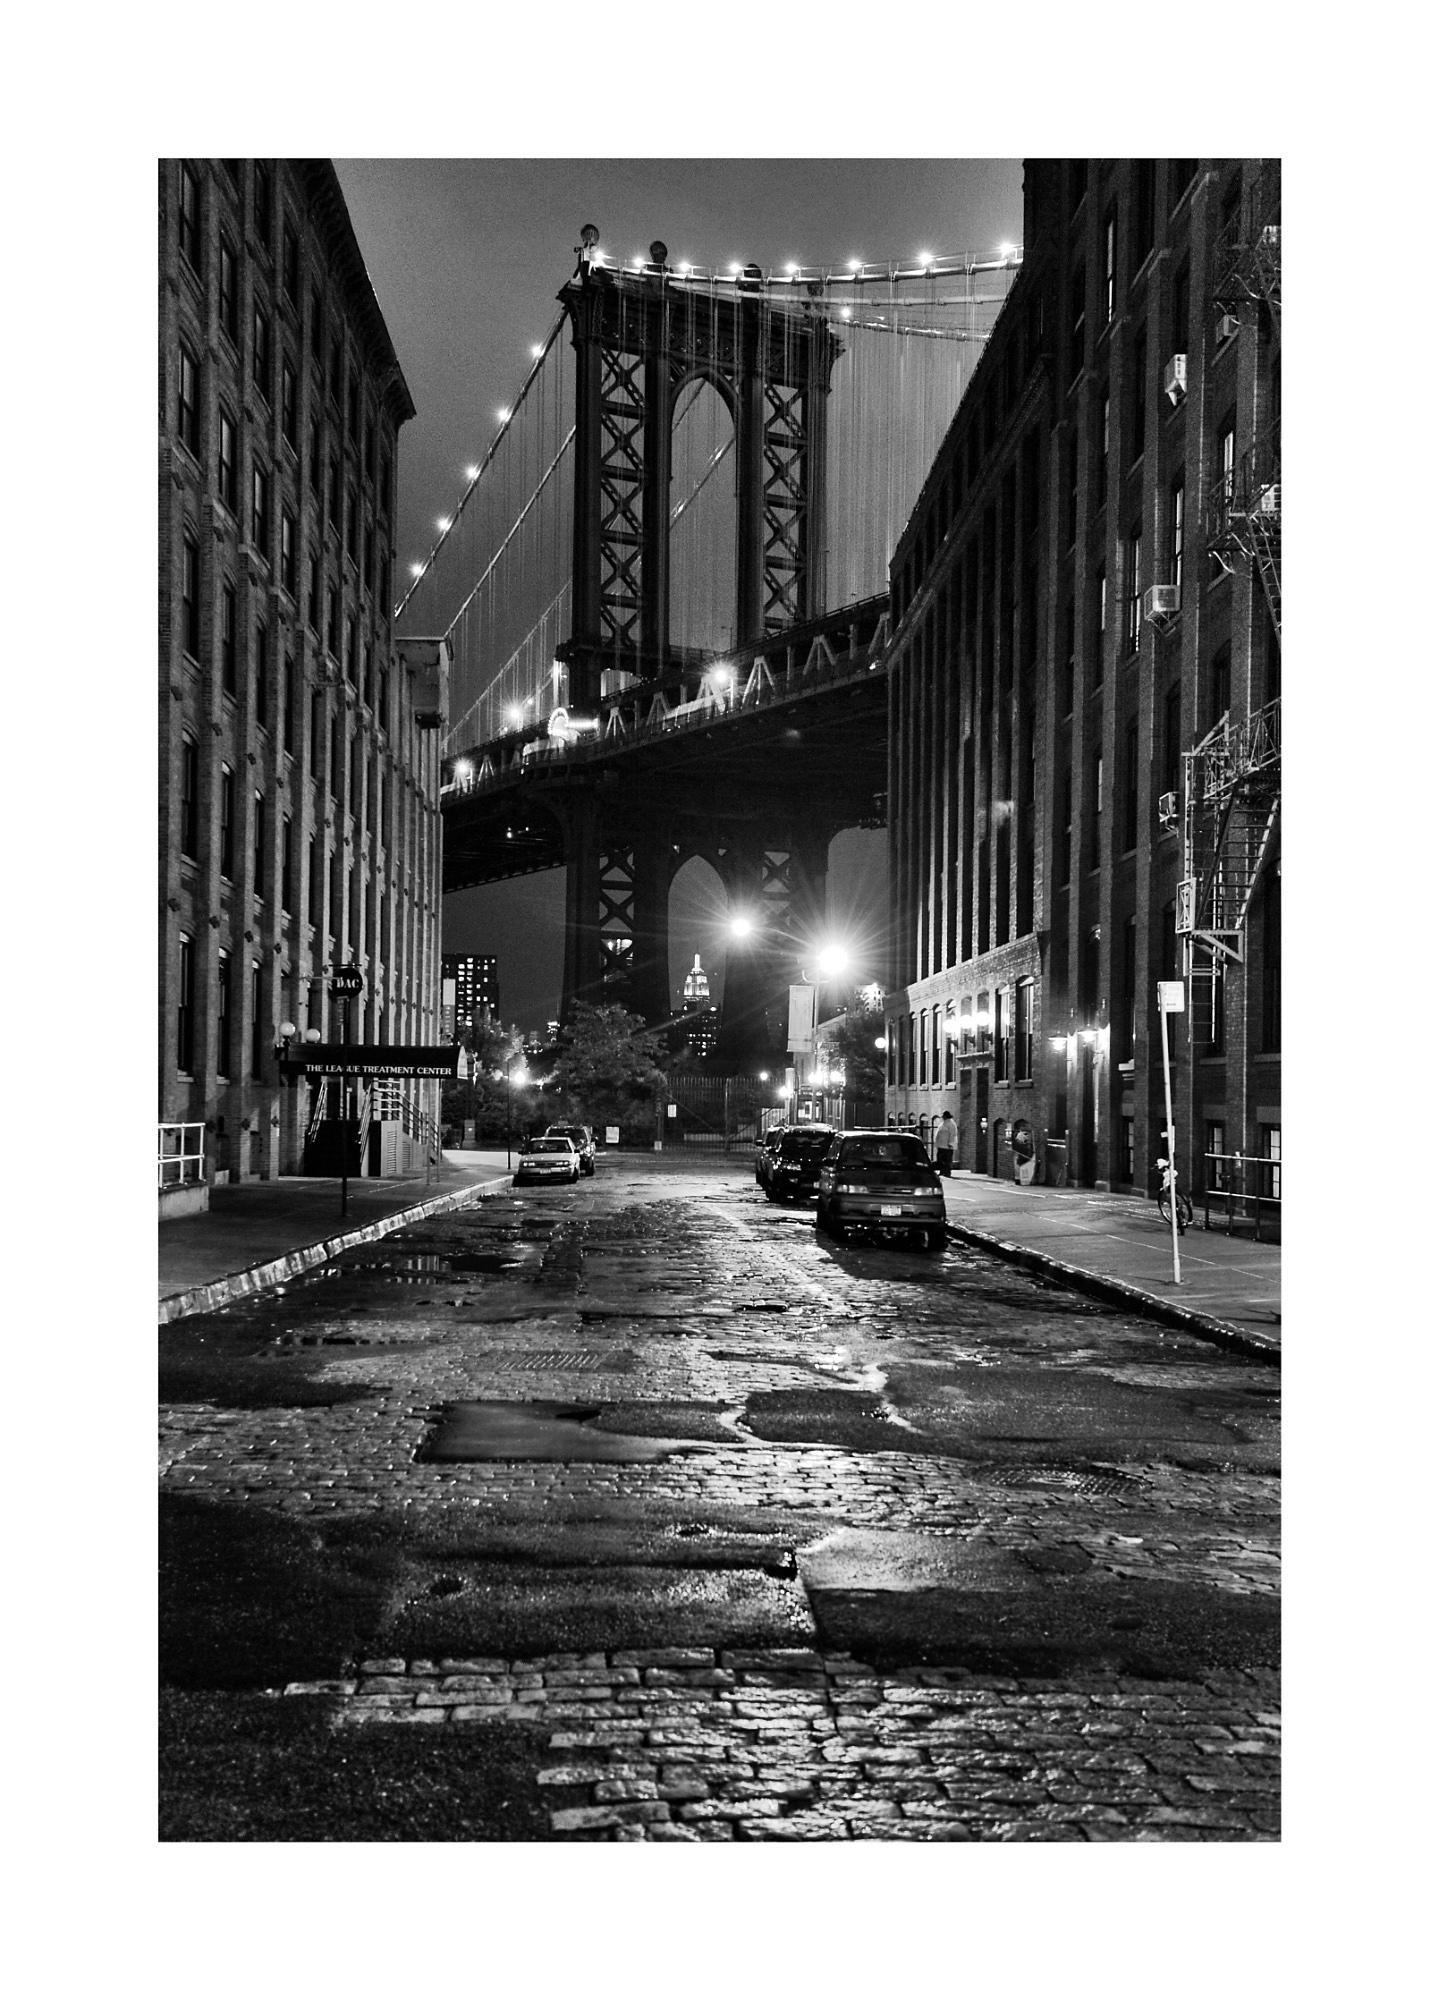 Washington Bridge New York, Schwarz-Weiß-Kunstdruck, 40 x 60 cm von Rainer Martini
Rainer Martini ist ein bekannter Fotograf aus Deutschland, geboren 1948
Er begann mit der Sportfotografie und fotografierte alle Olympischen Spiele von 1772-2006